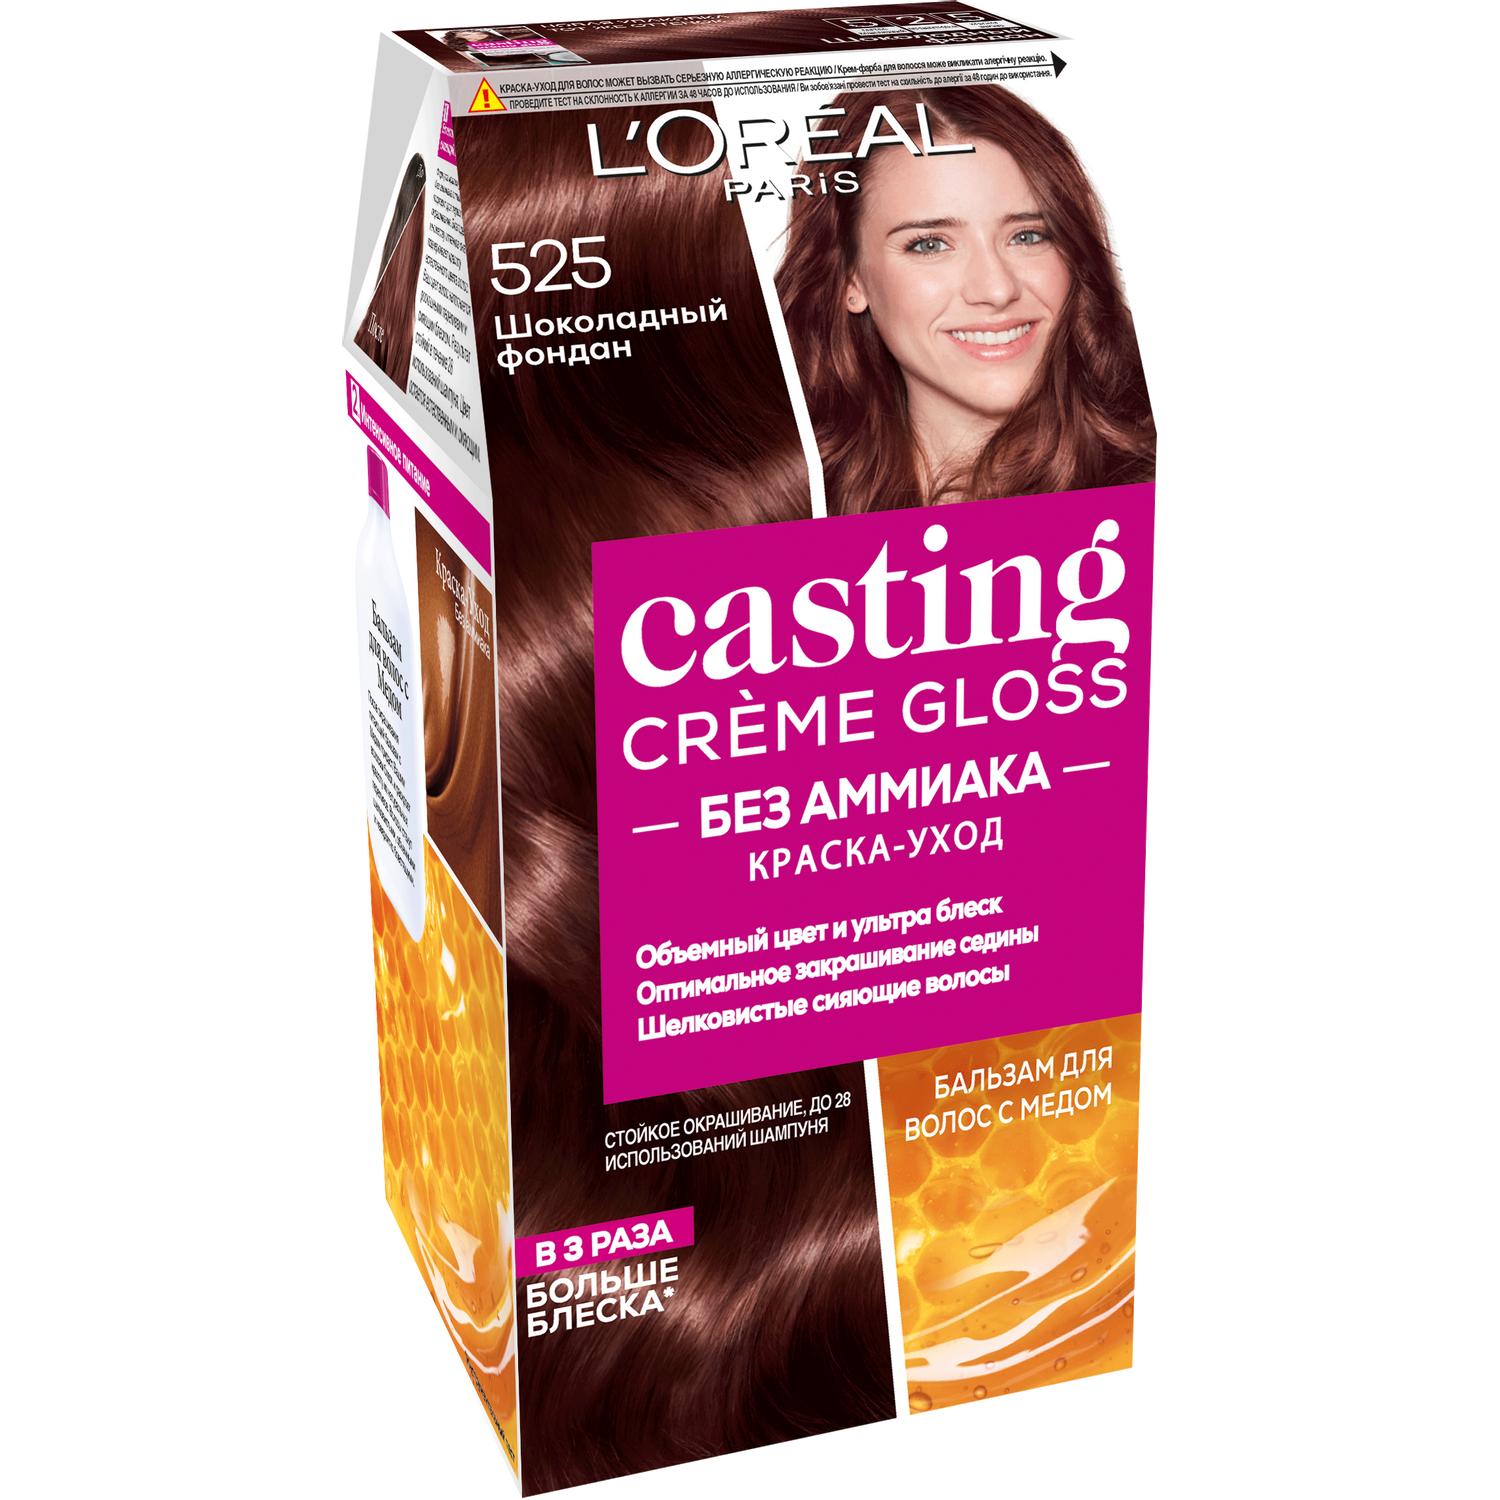 Краска для волос L'Oreal Paris Casting Creme Gloss 525 Шоколадный фондан